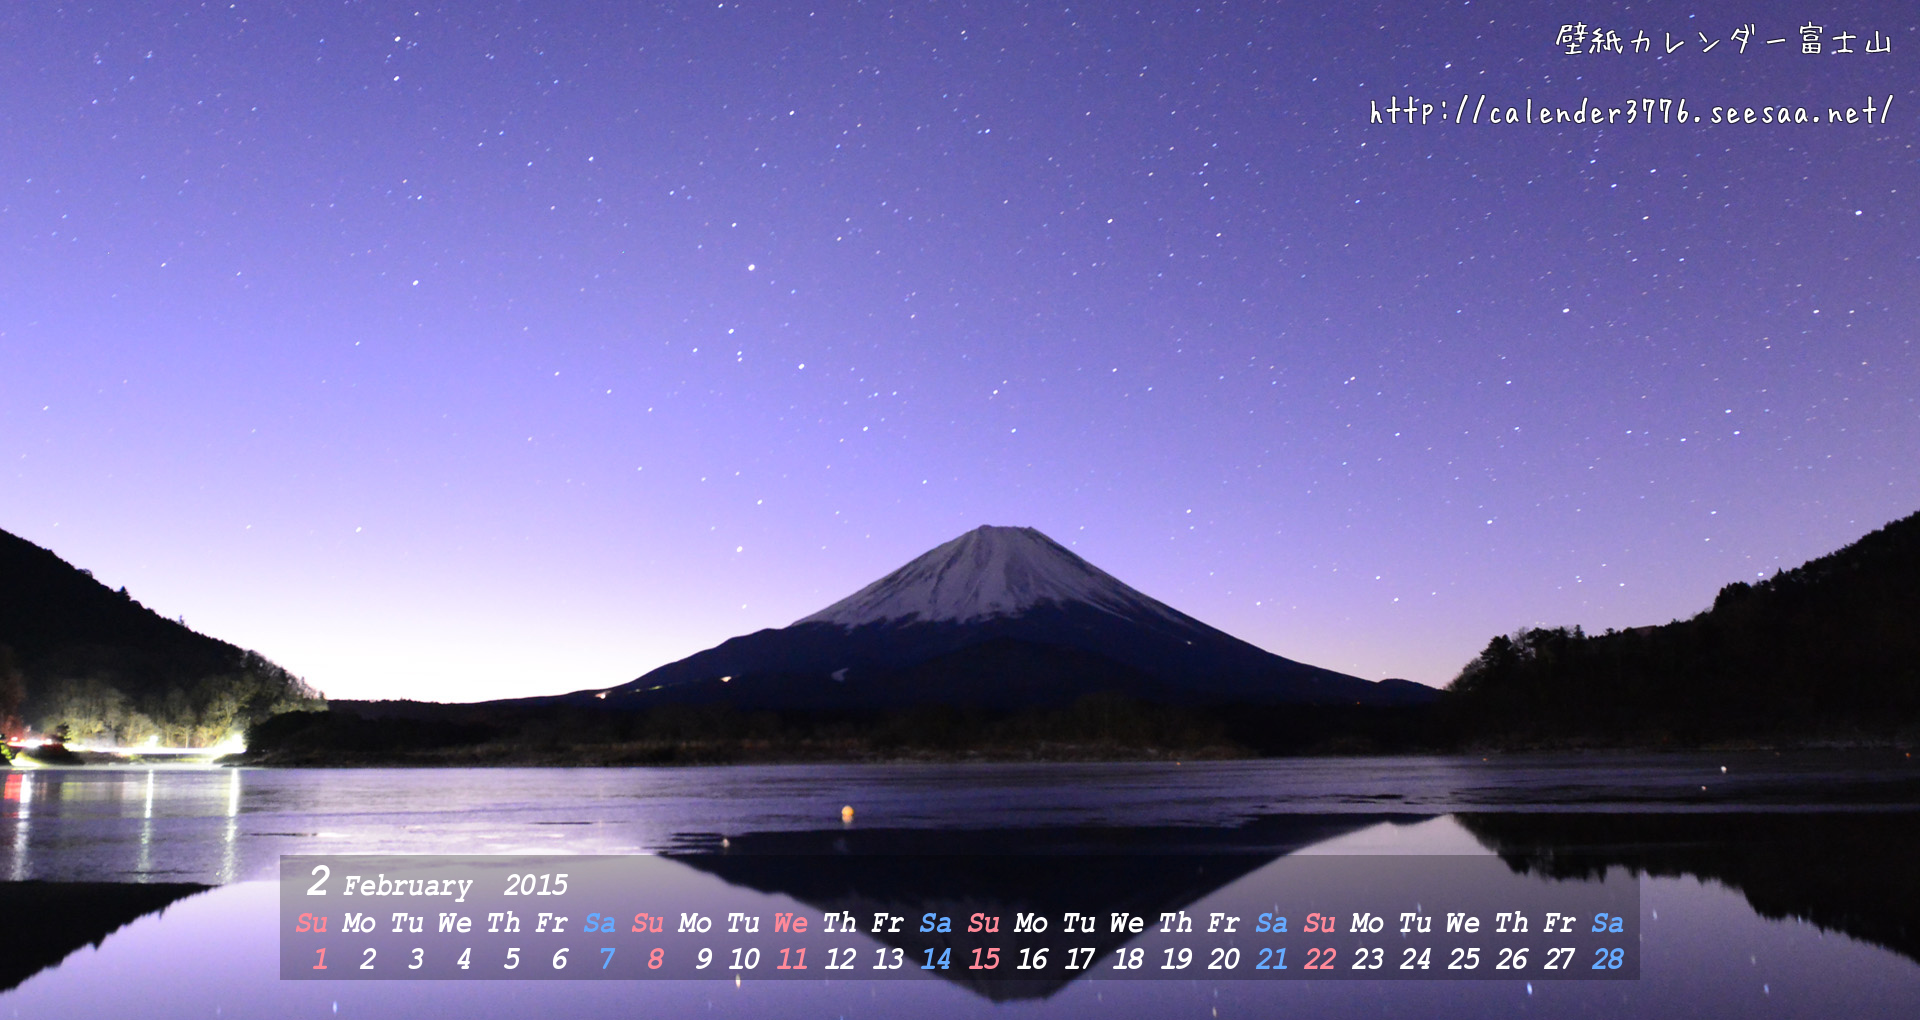 壁紙カレンダー 15年2月 19 10 精進湖 夜明け前 壁紙 カレンダー 富士山